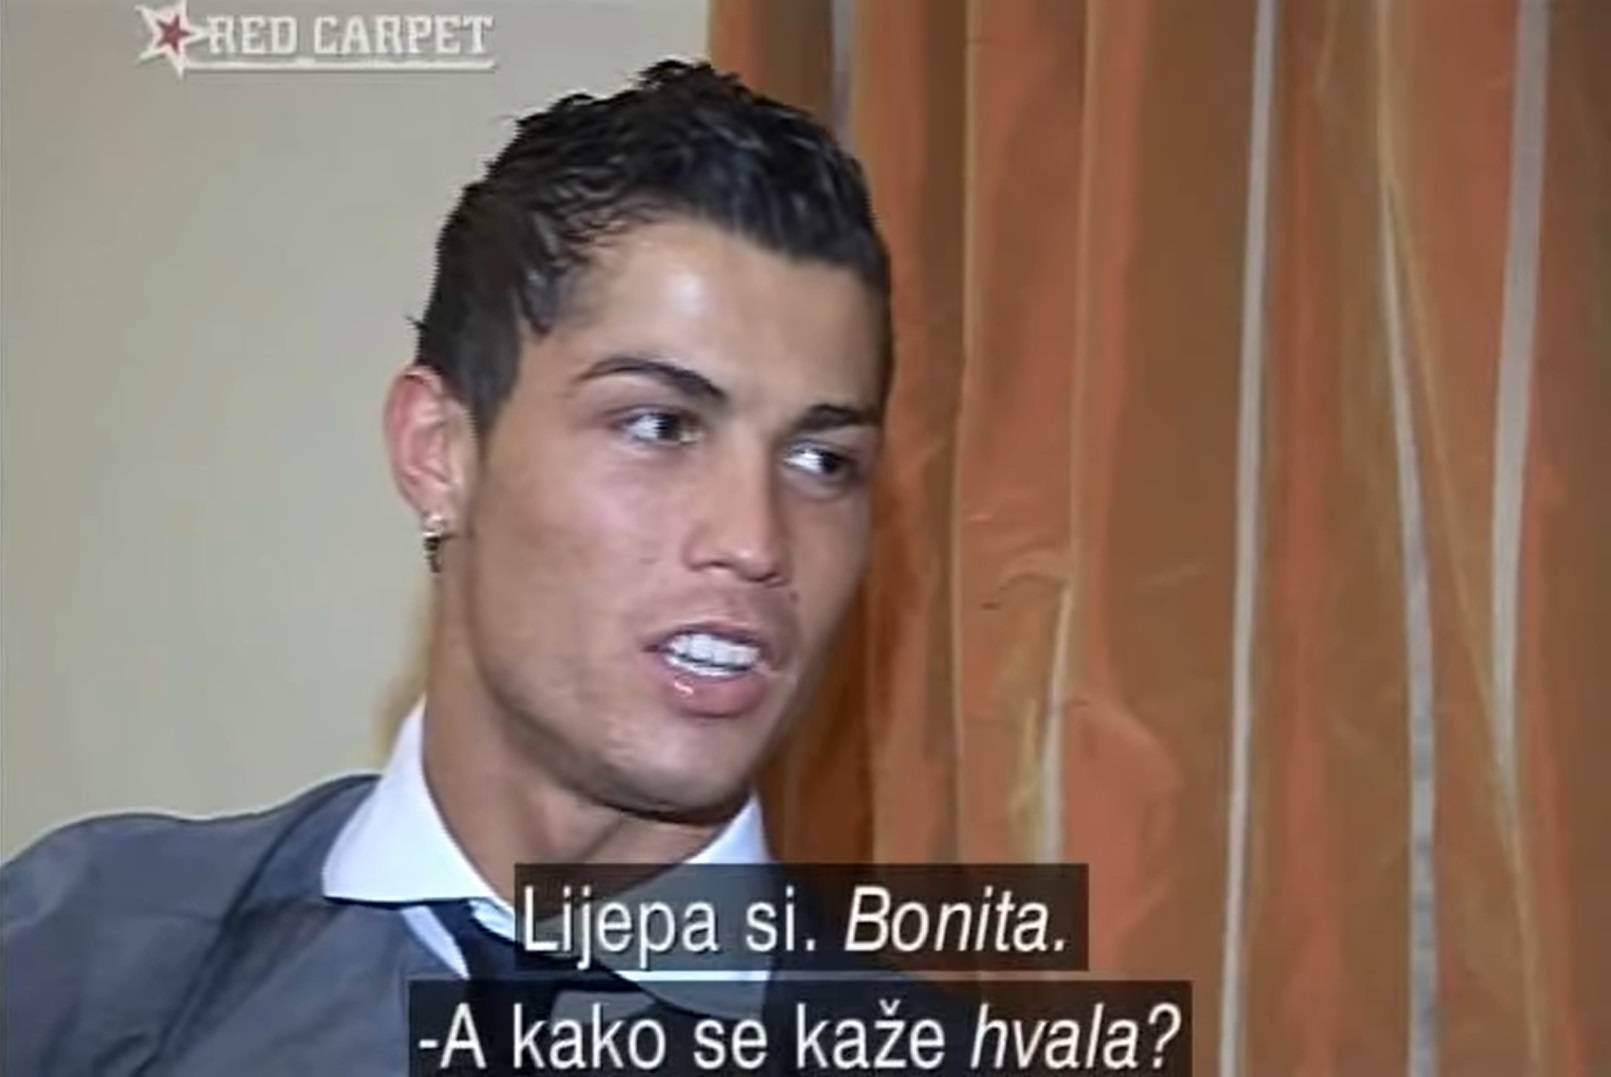 Legenda Reala nije jedini kojem je Fani zapela za oko: Ronaldo joj 'uletio' za vrijeme intervjua